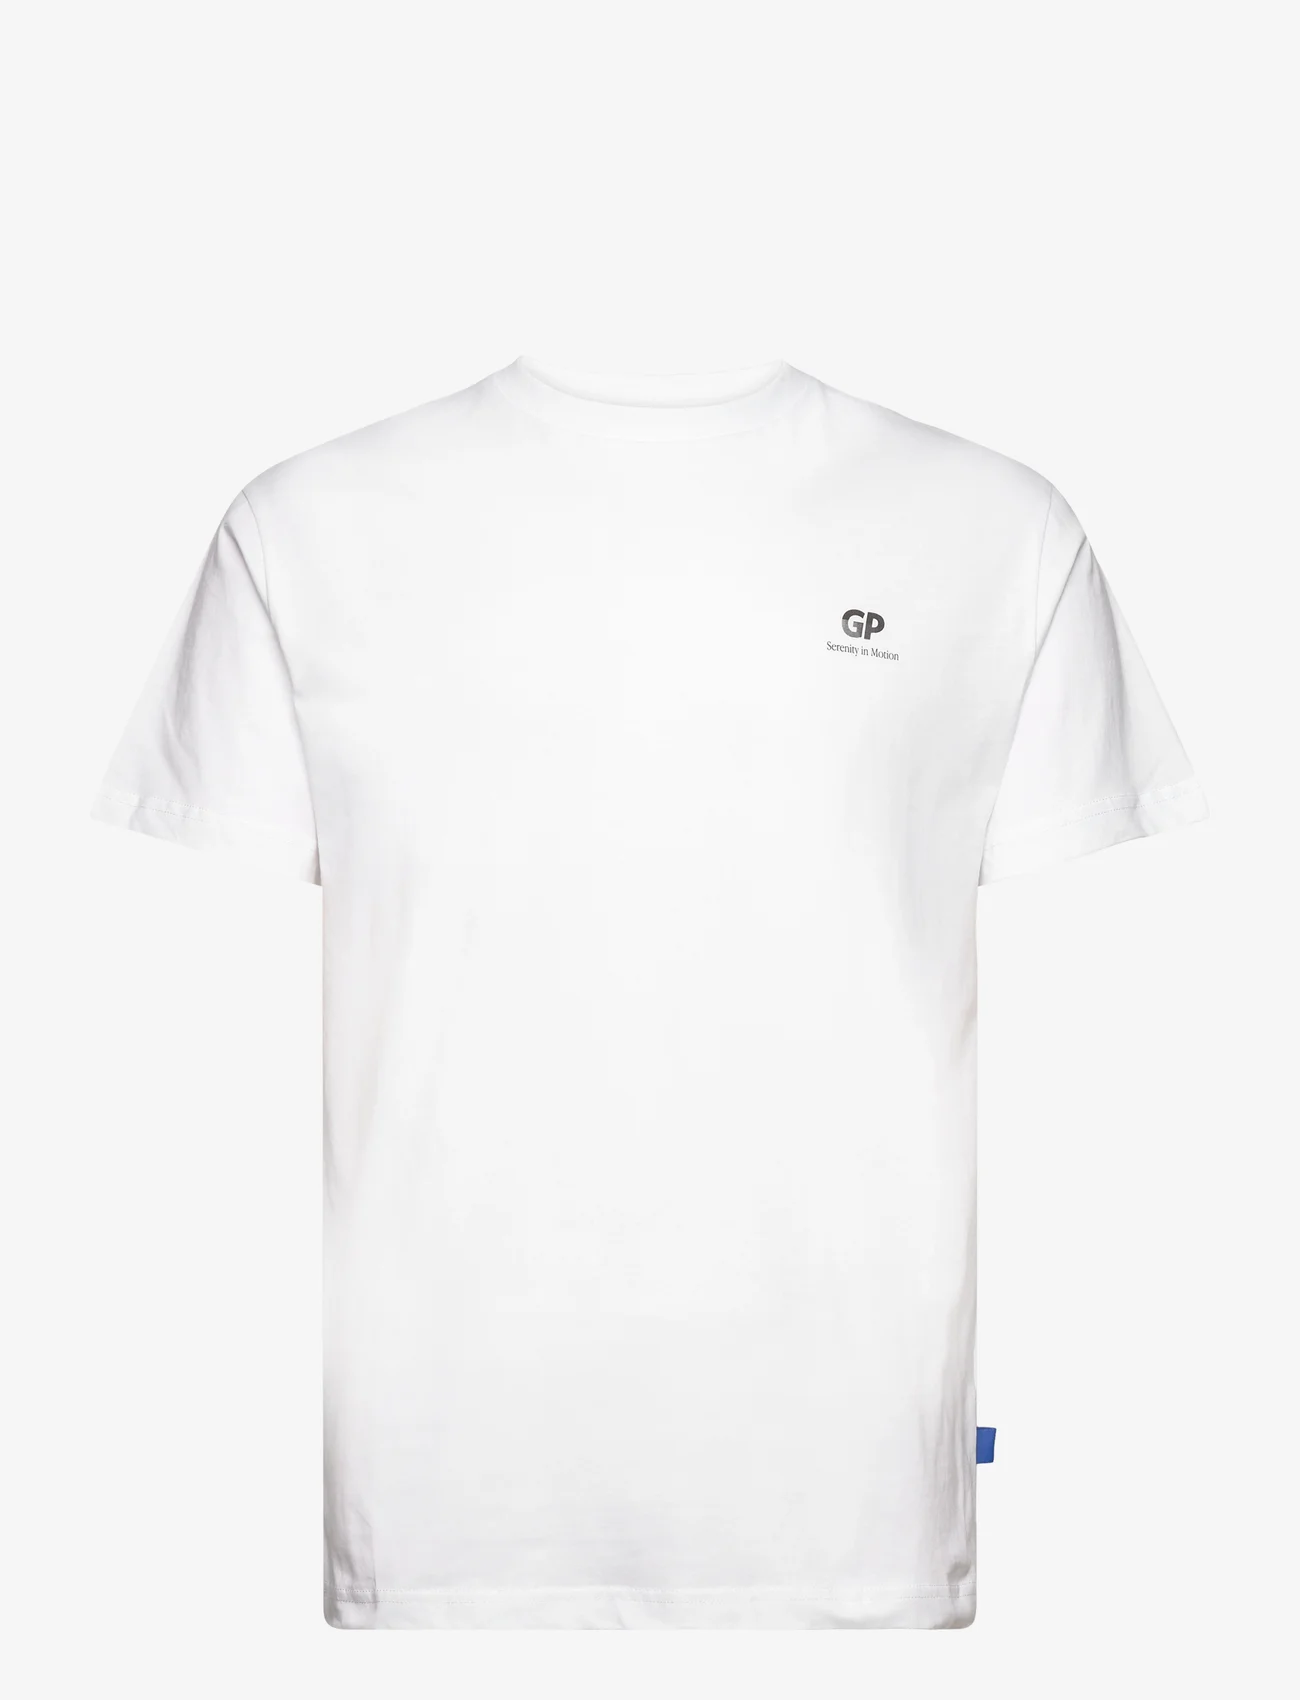 Garment Project - Relaxed Fit Tee - White / Serenity in motion - kortermede t-skjorter - white - 0